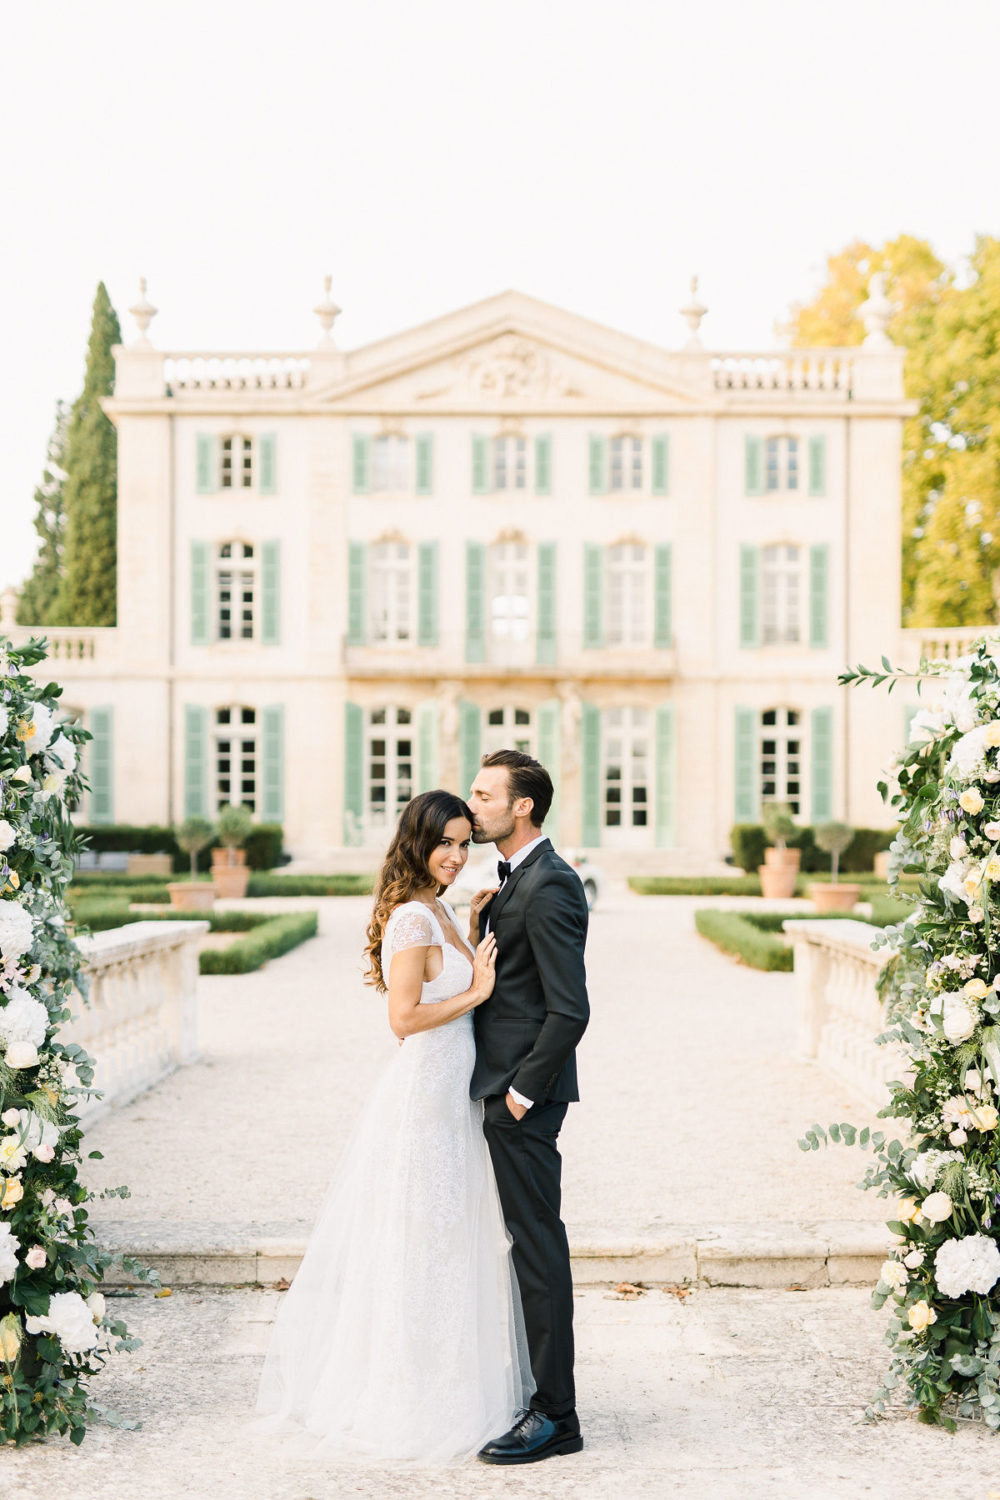 Mariage élégant au Château Tourreau // Crédit - Jérémie HKB